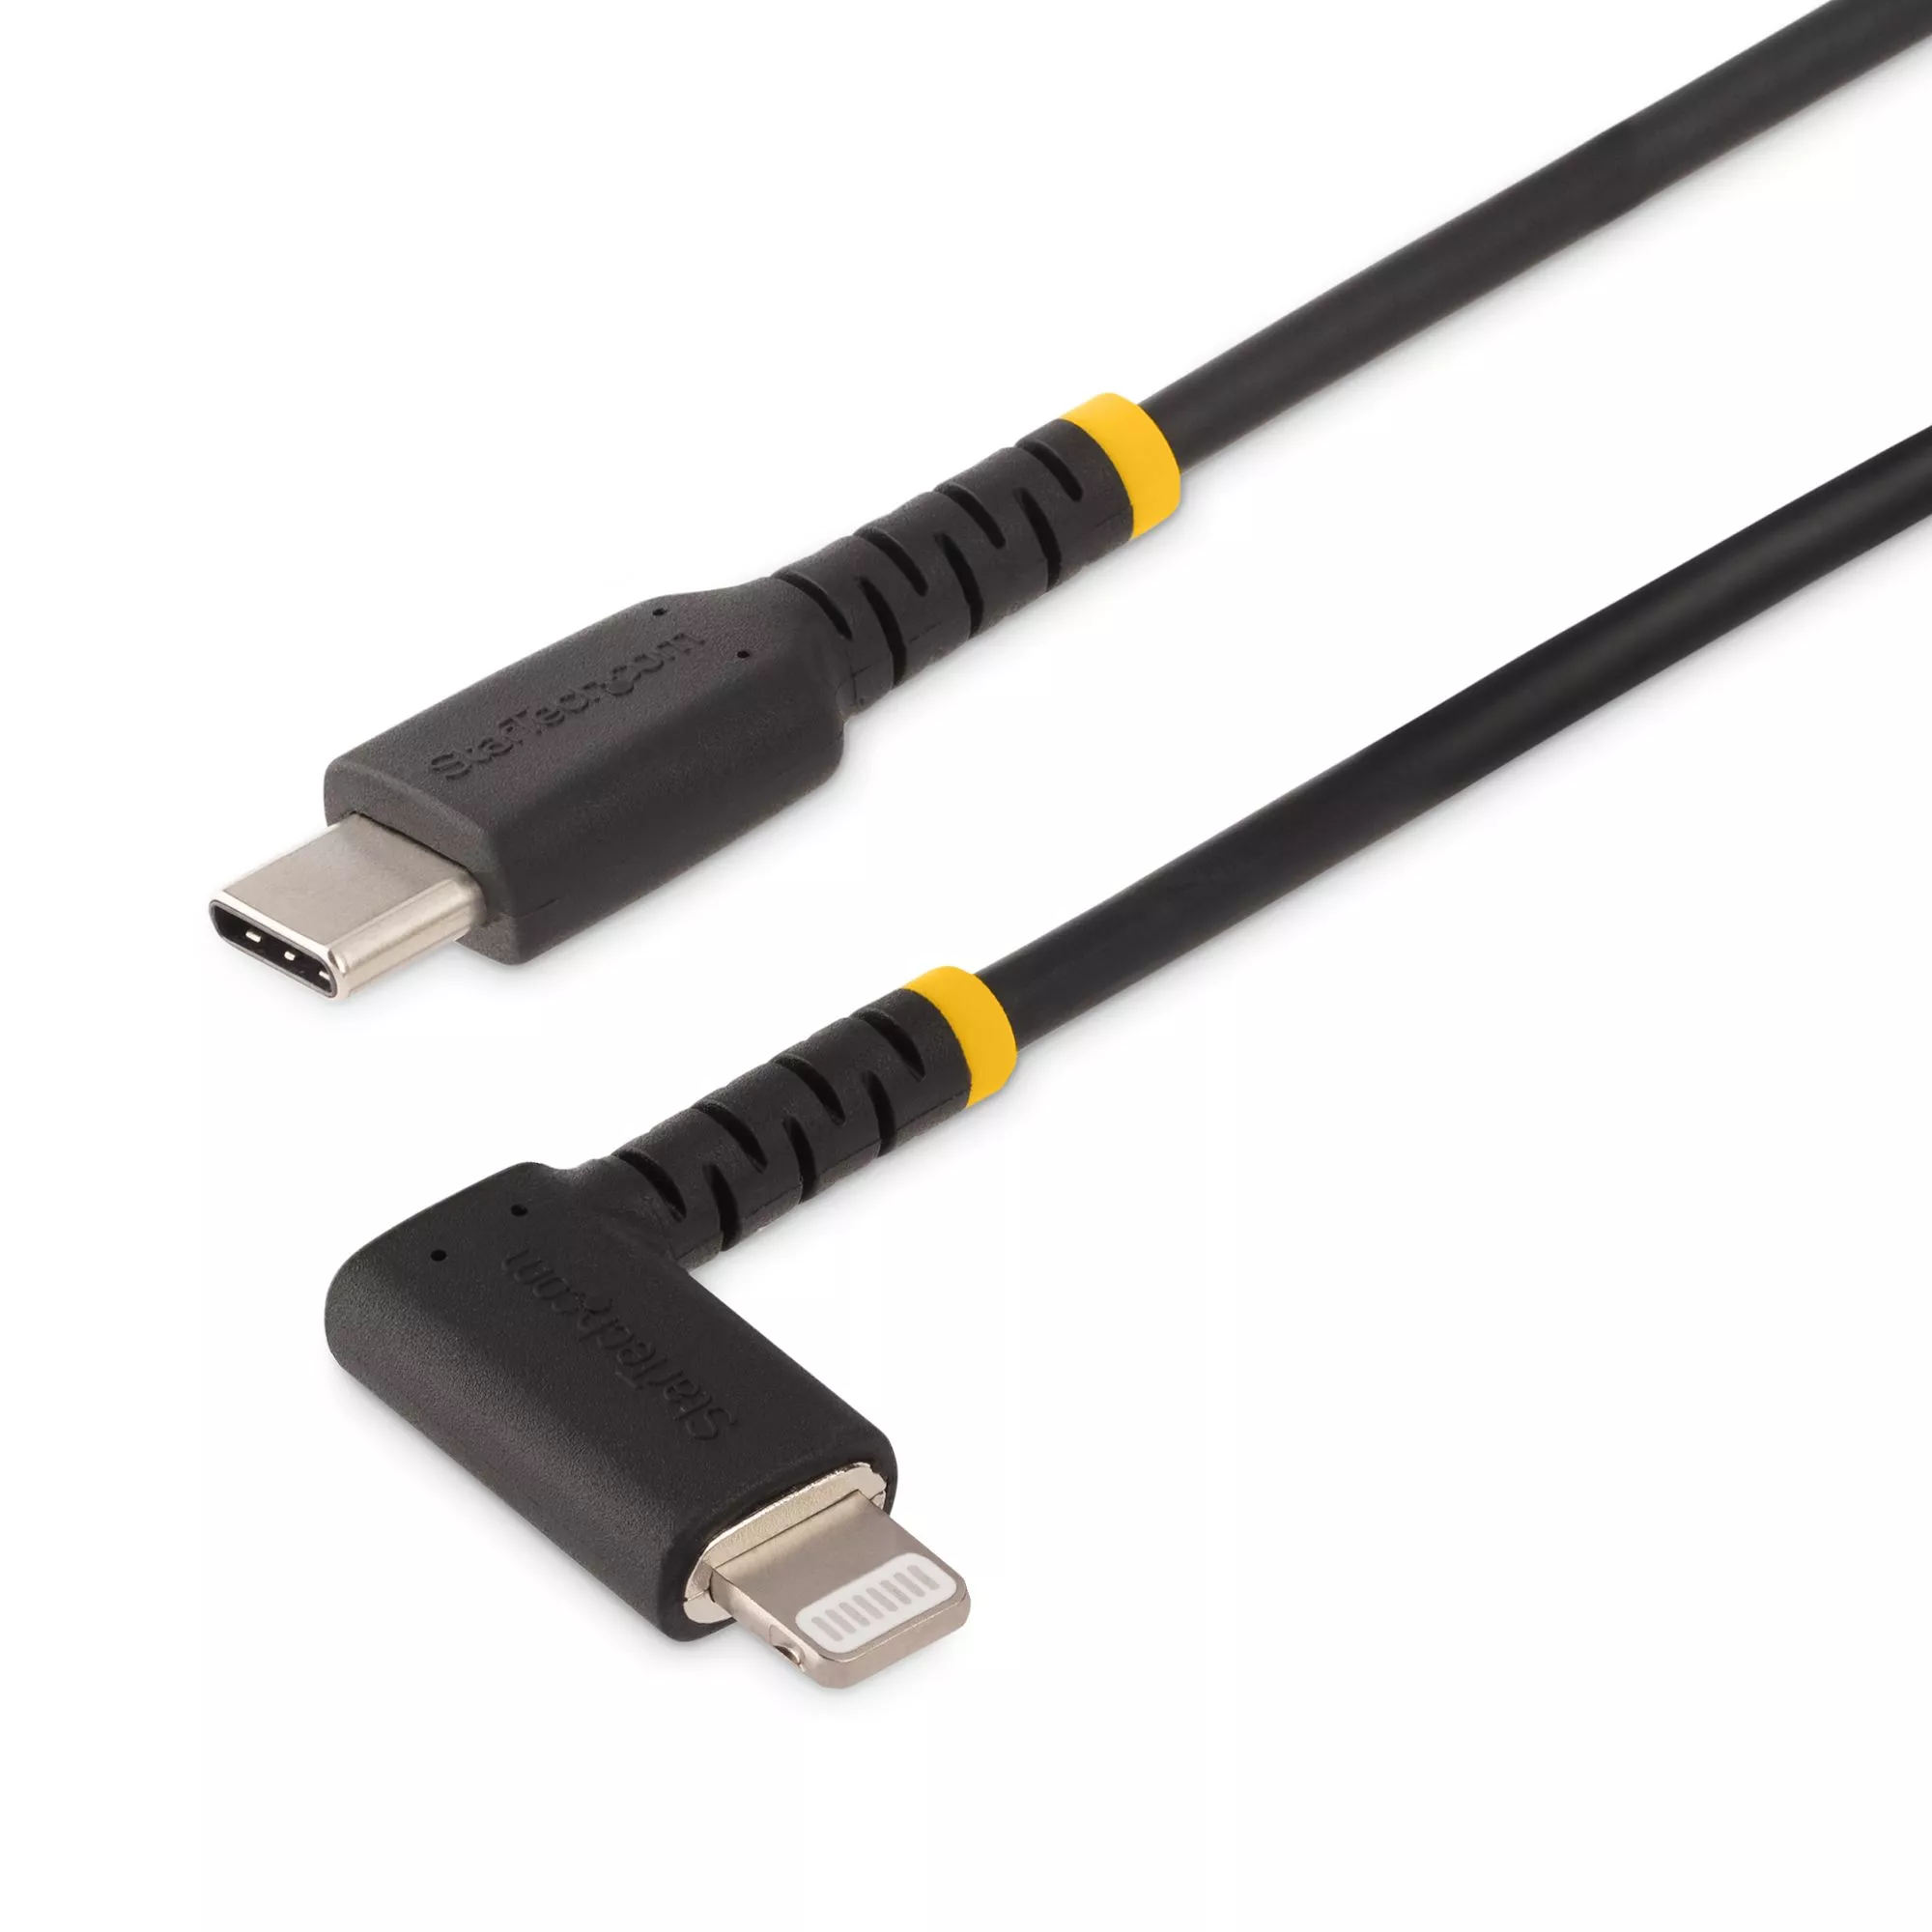 Revendeur officiel StarTech.com Câble USB-C vers Lightning de 2m - Cordon de